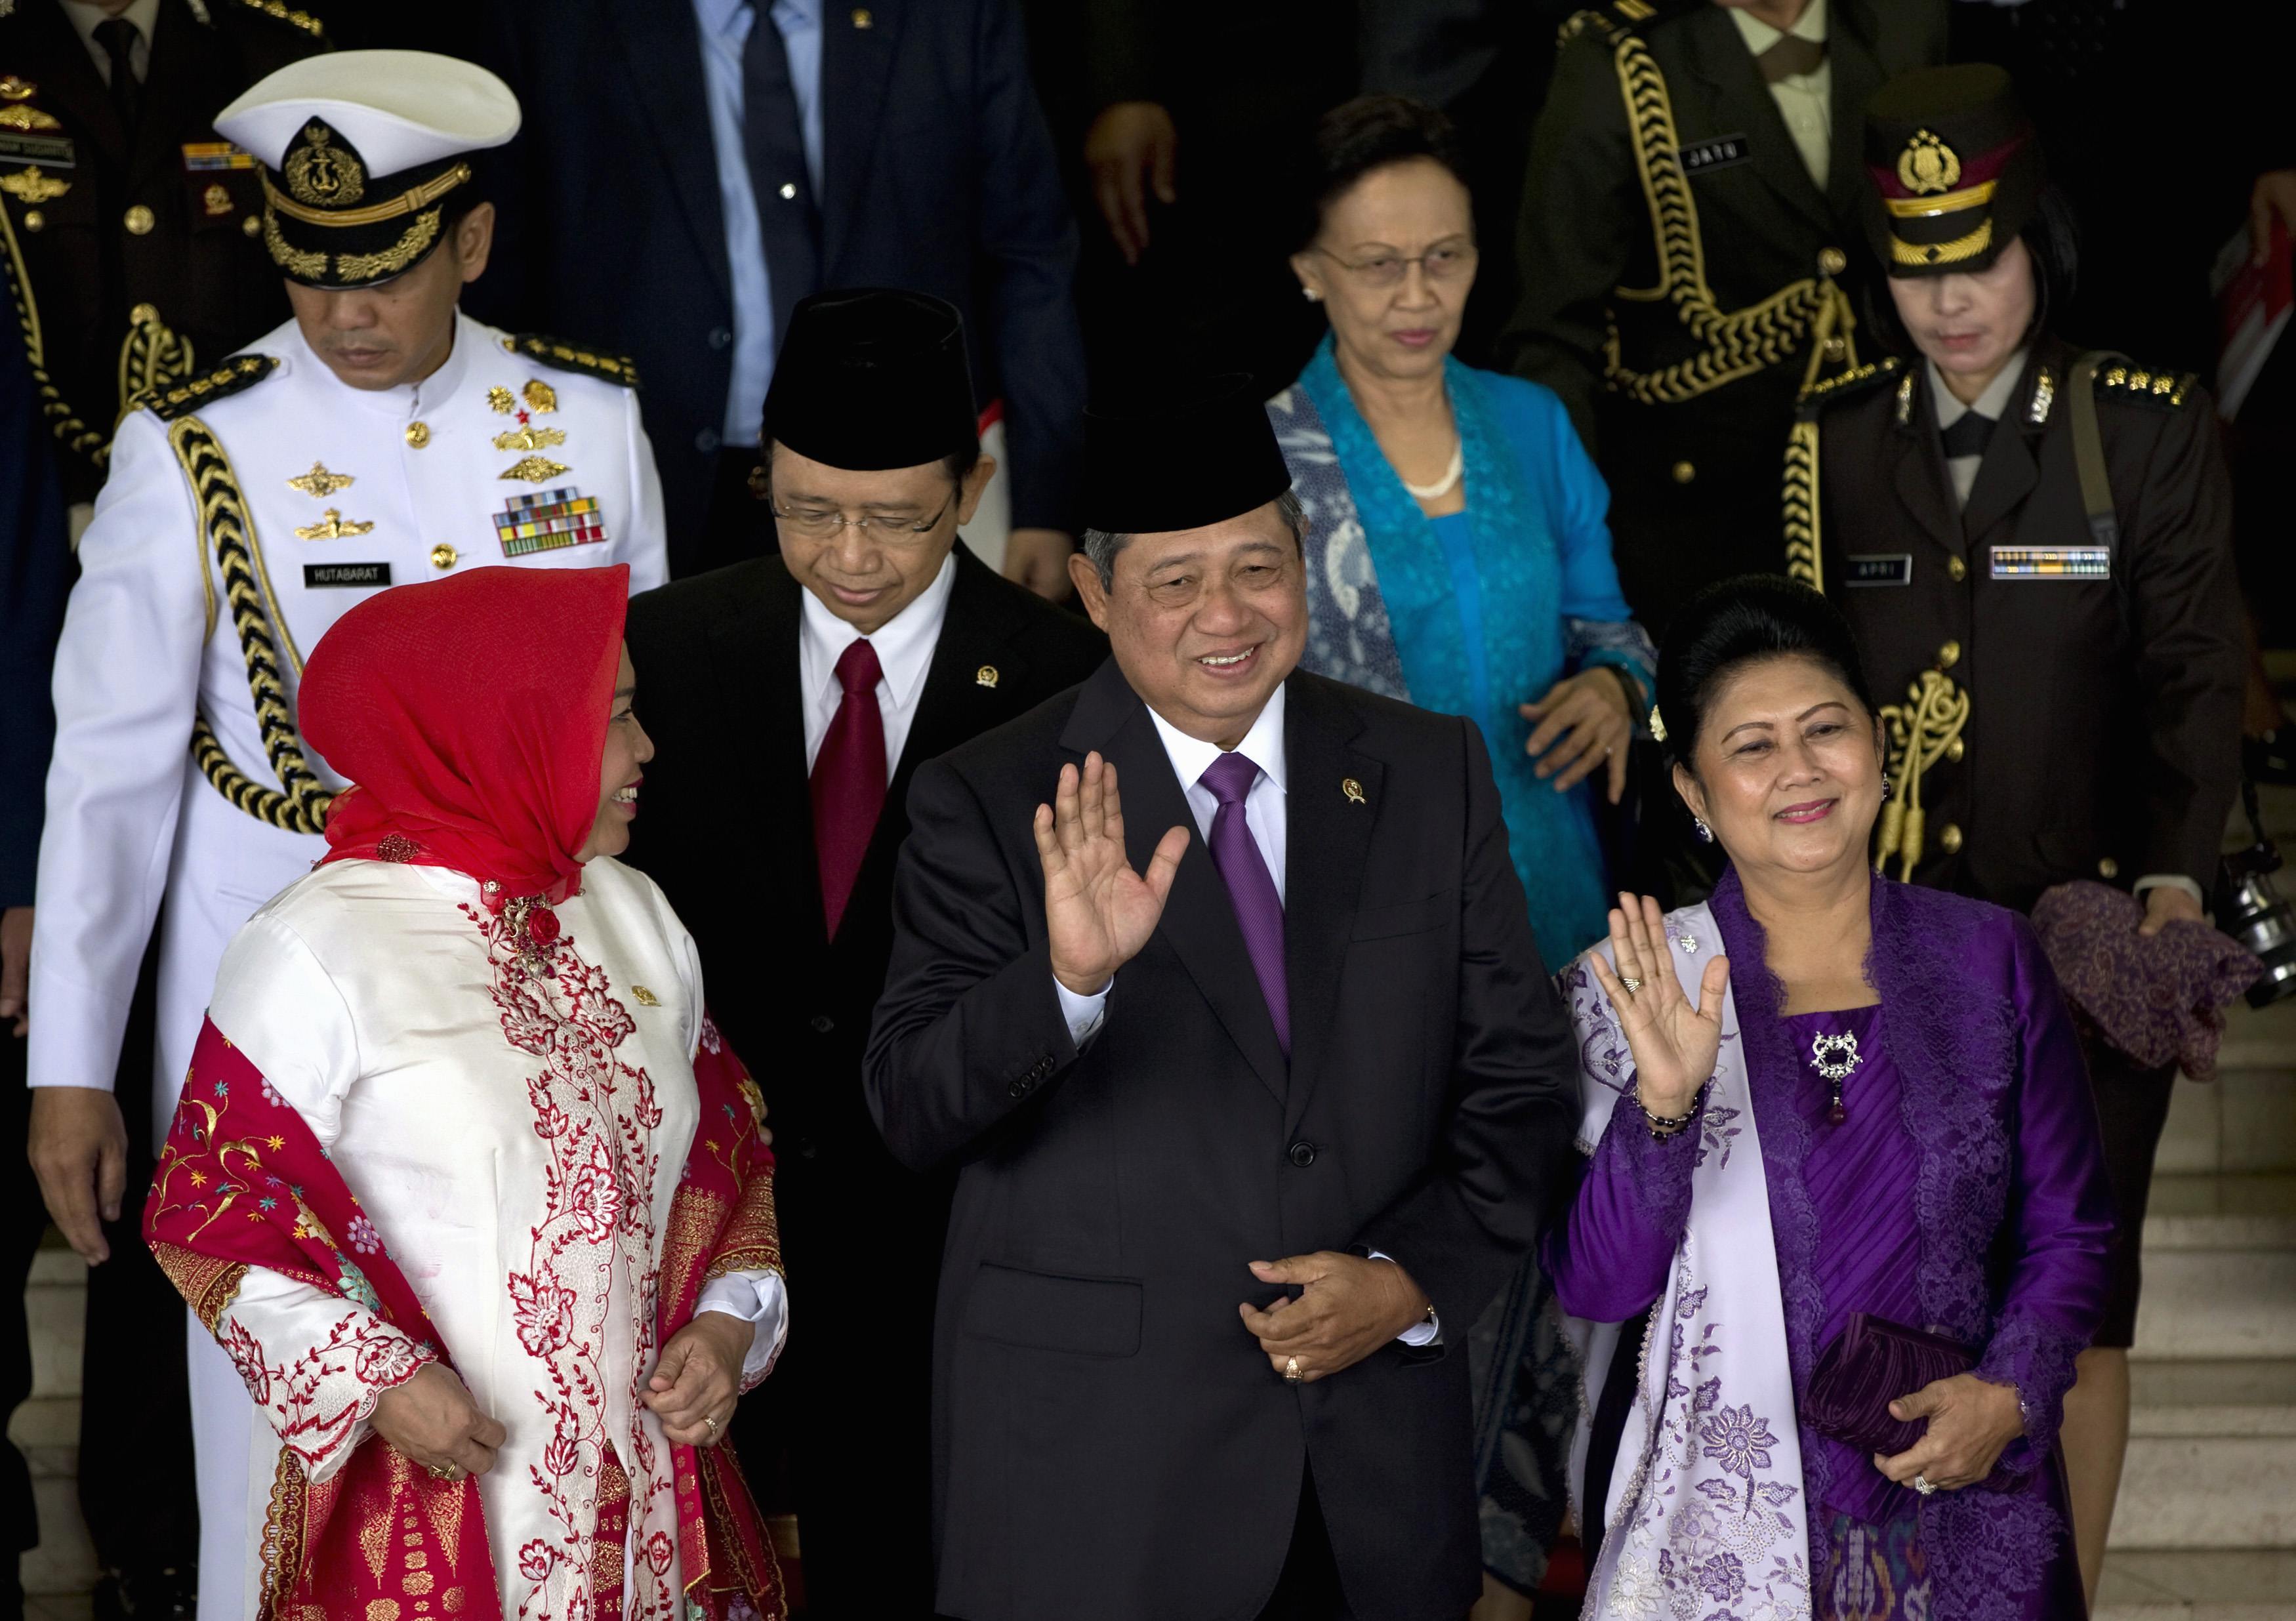 Ινδονησία: Ο πρόεδρος αποδοκίμασε την προσπάθεια στρατολόγησης Ινδονήσιων από το Ισλαμικό Κράτος